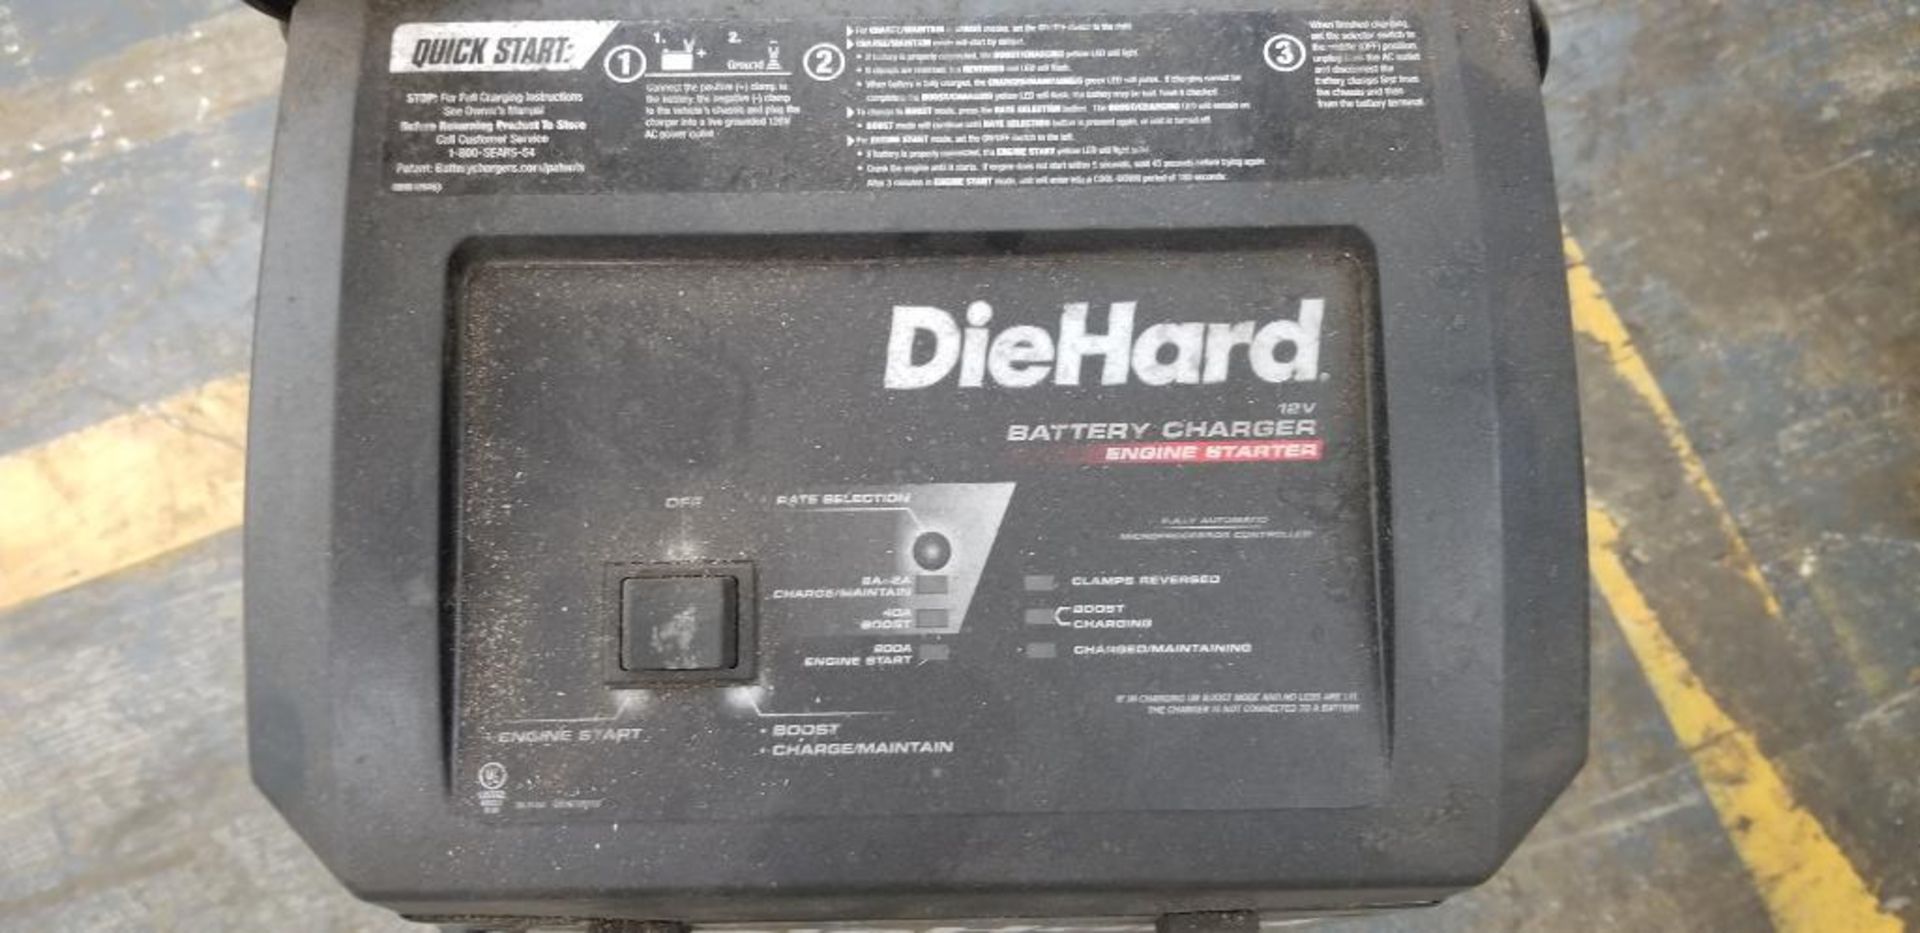 Diehard Battery Charger/ Engine Starter, Model 81331, Input: 120v, Output: 12v - Image 2 of 5